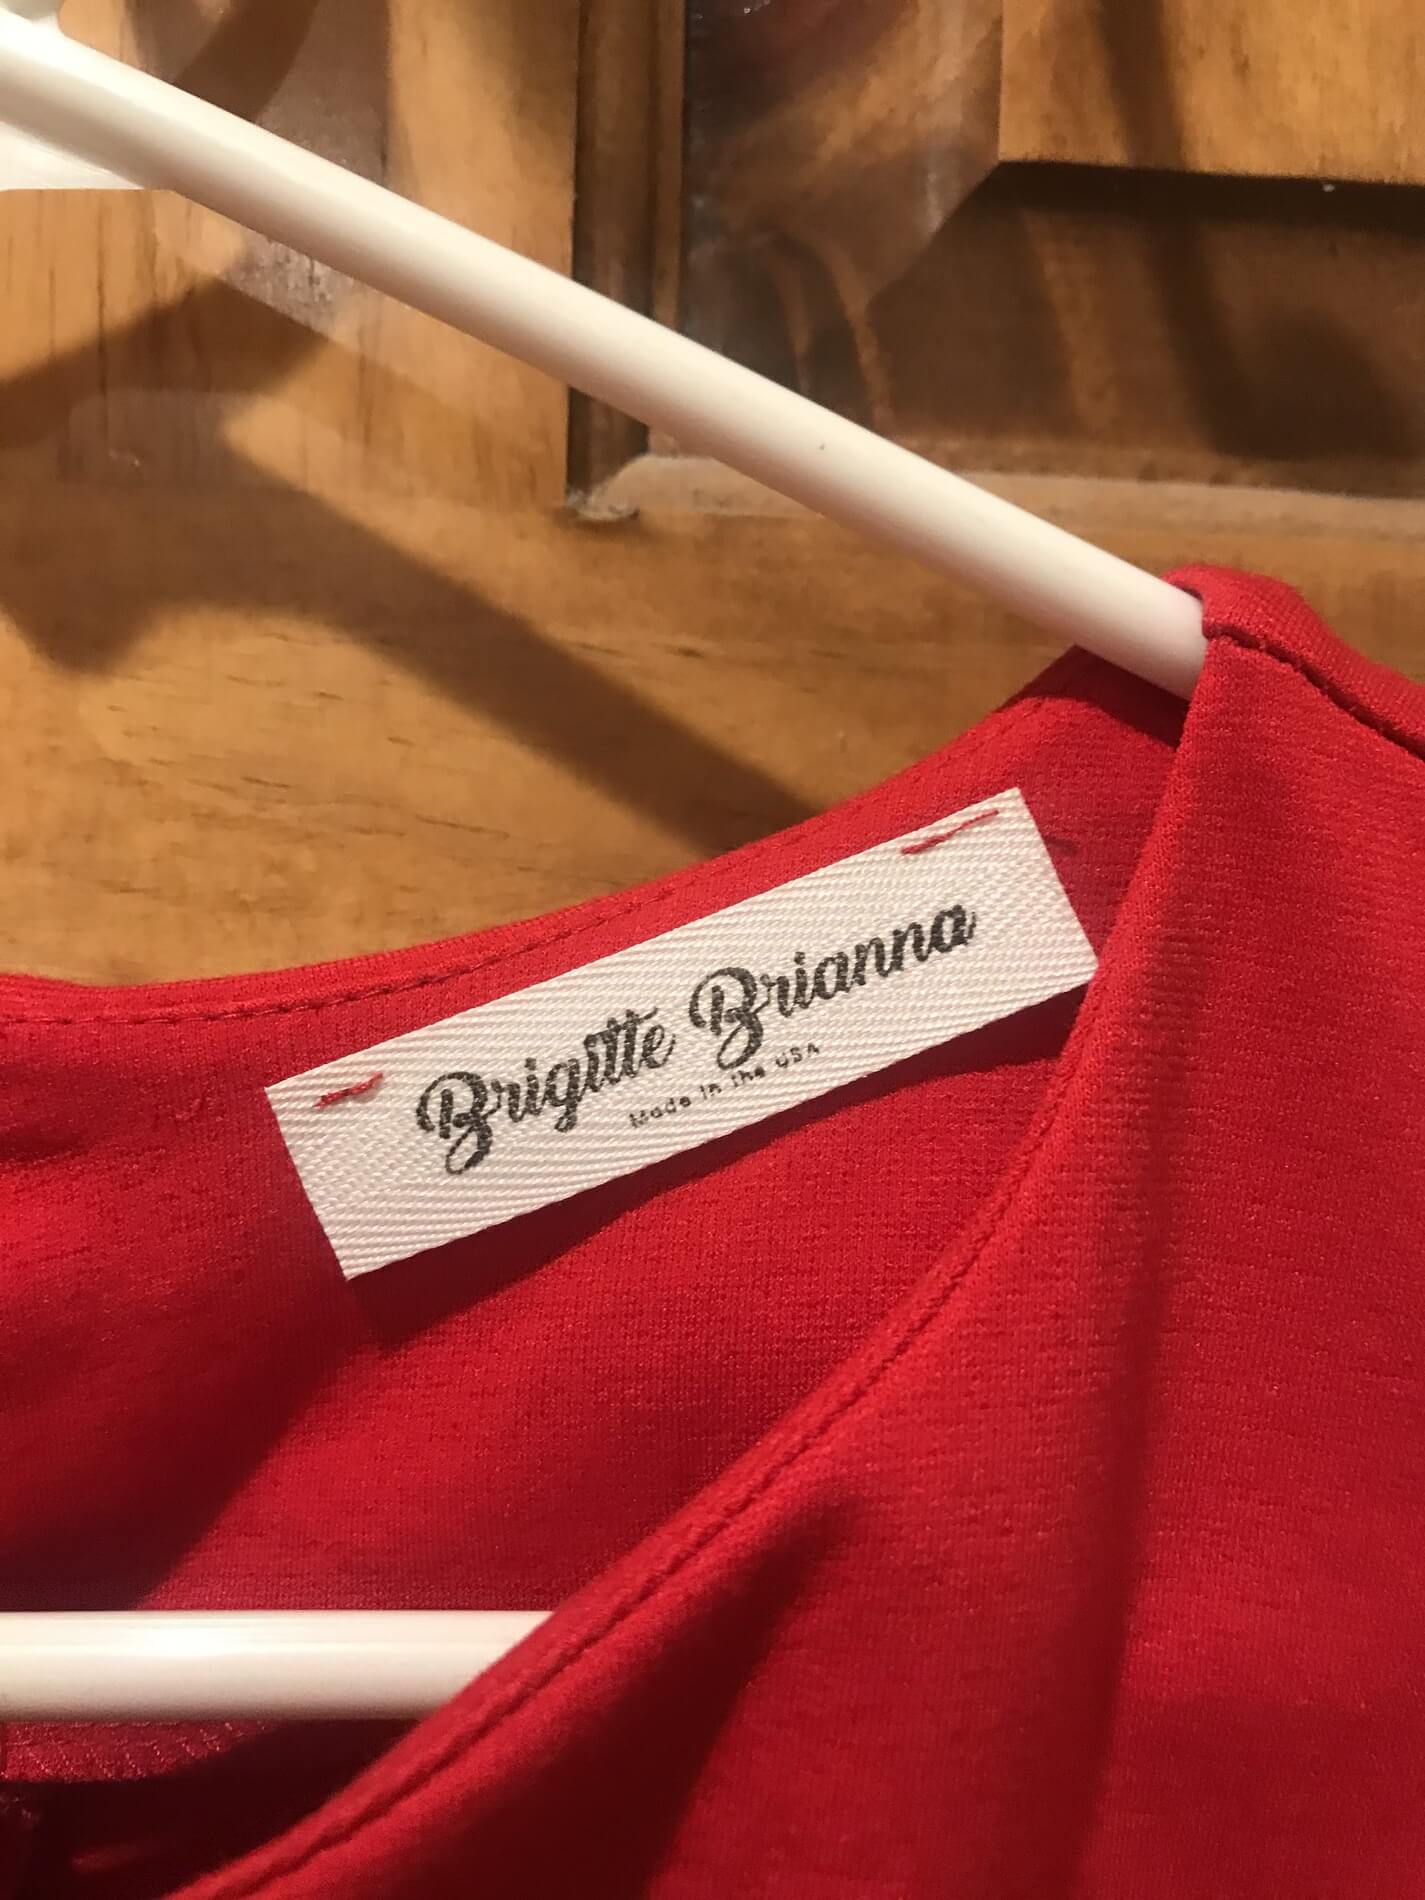 Brigitte Brianna Size 4 Wedding Guest Red Cocktail Dress on Queenly